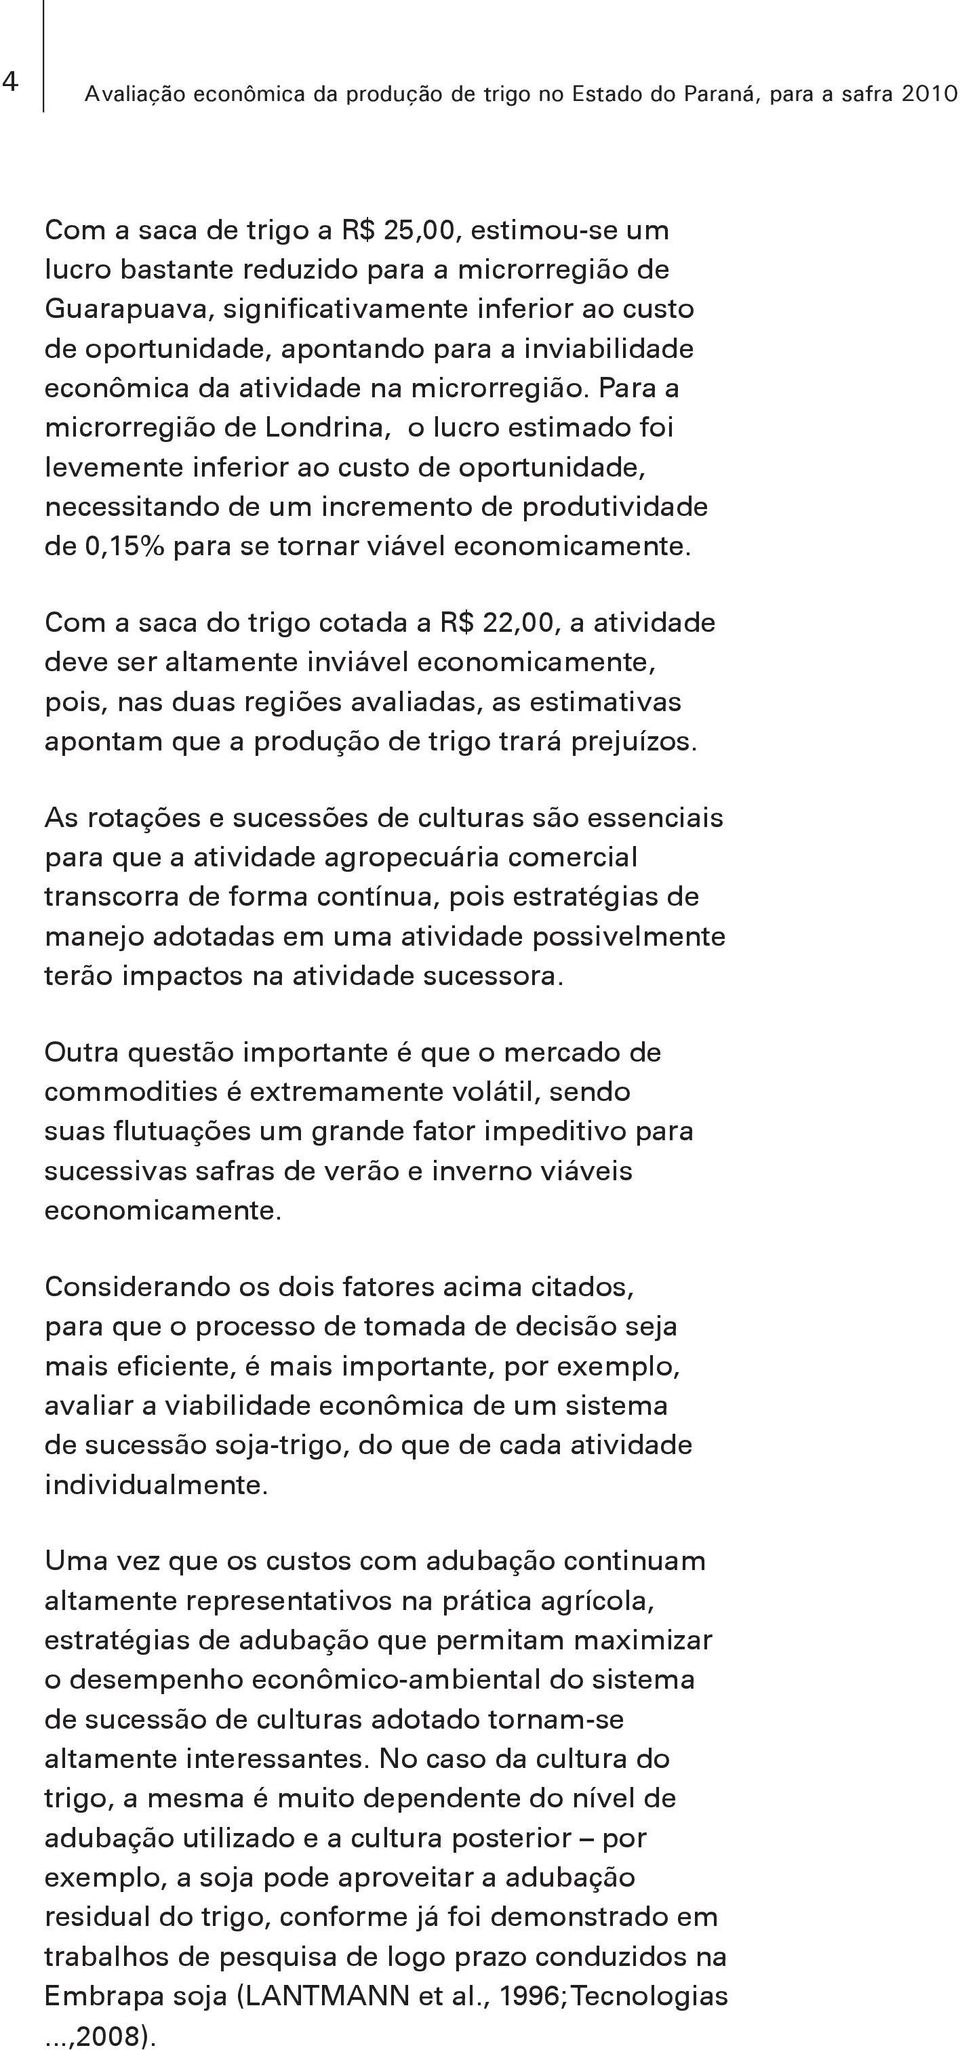 Para a microrregião de Londrina, o lucro estimado foi levemente inferior ao custo de oportunidade, necessitando de um incremento de produtividade de 0,15% para se tornar viável economicamente.